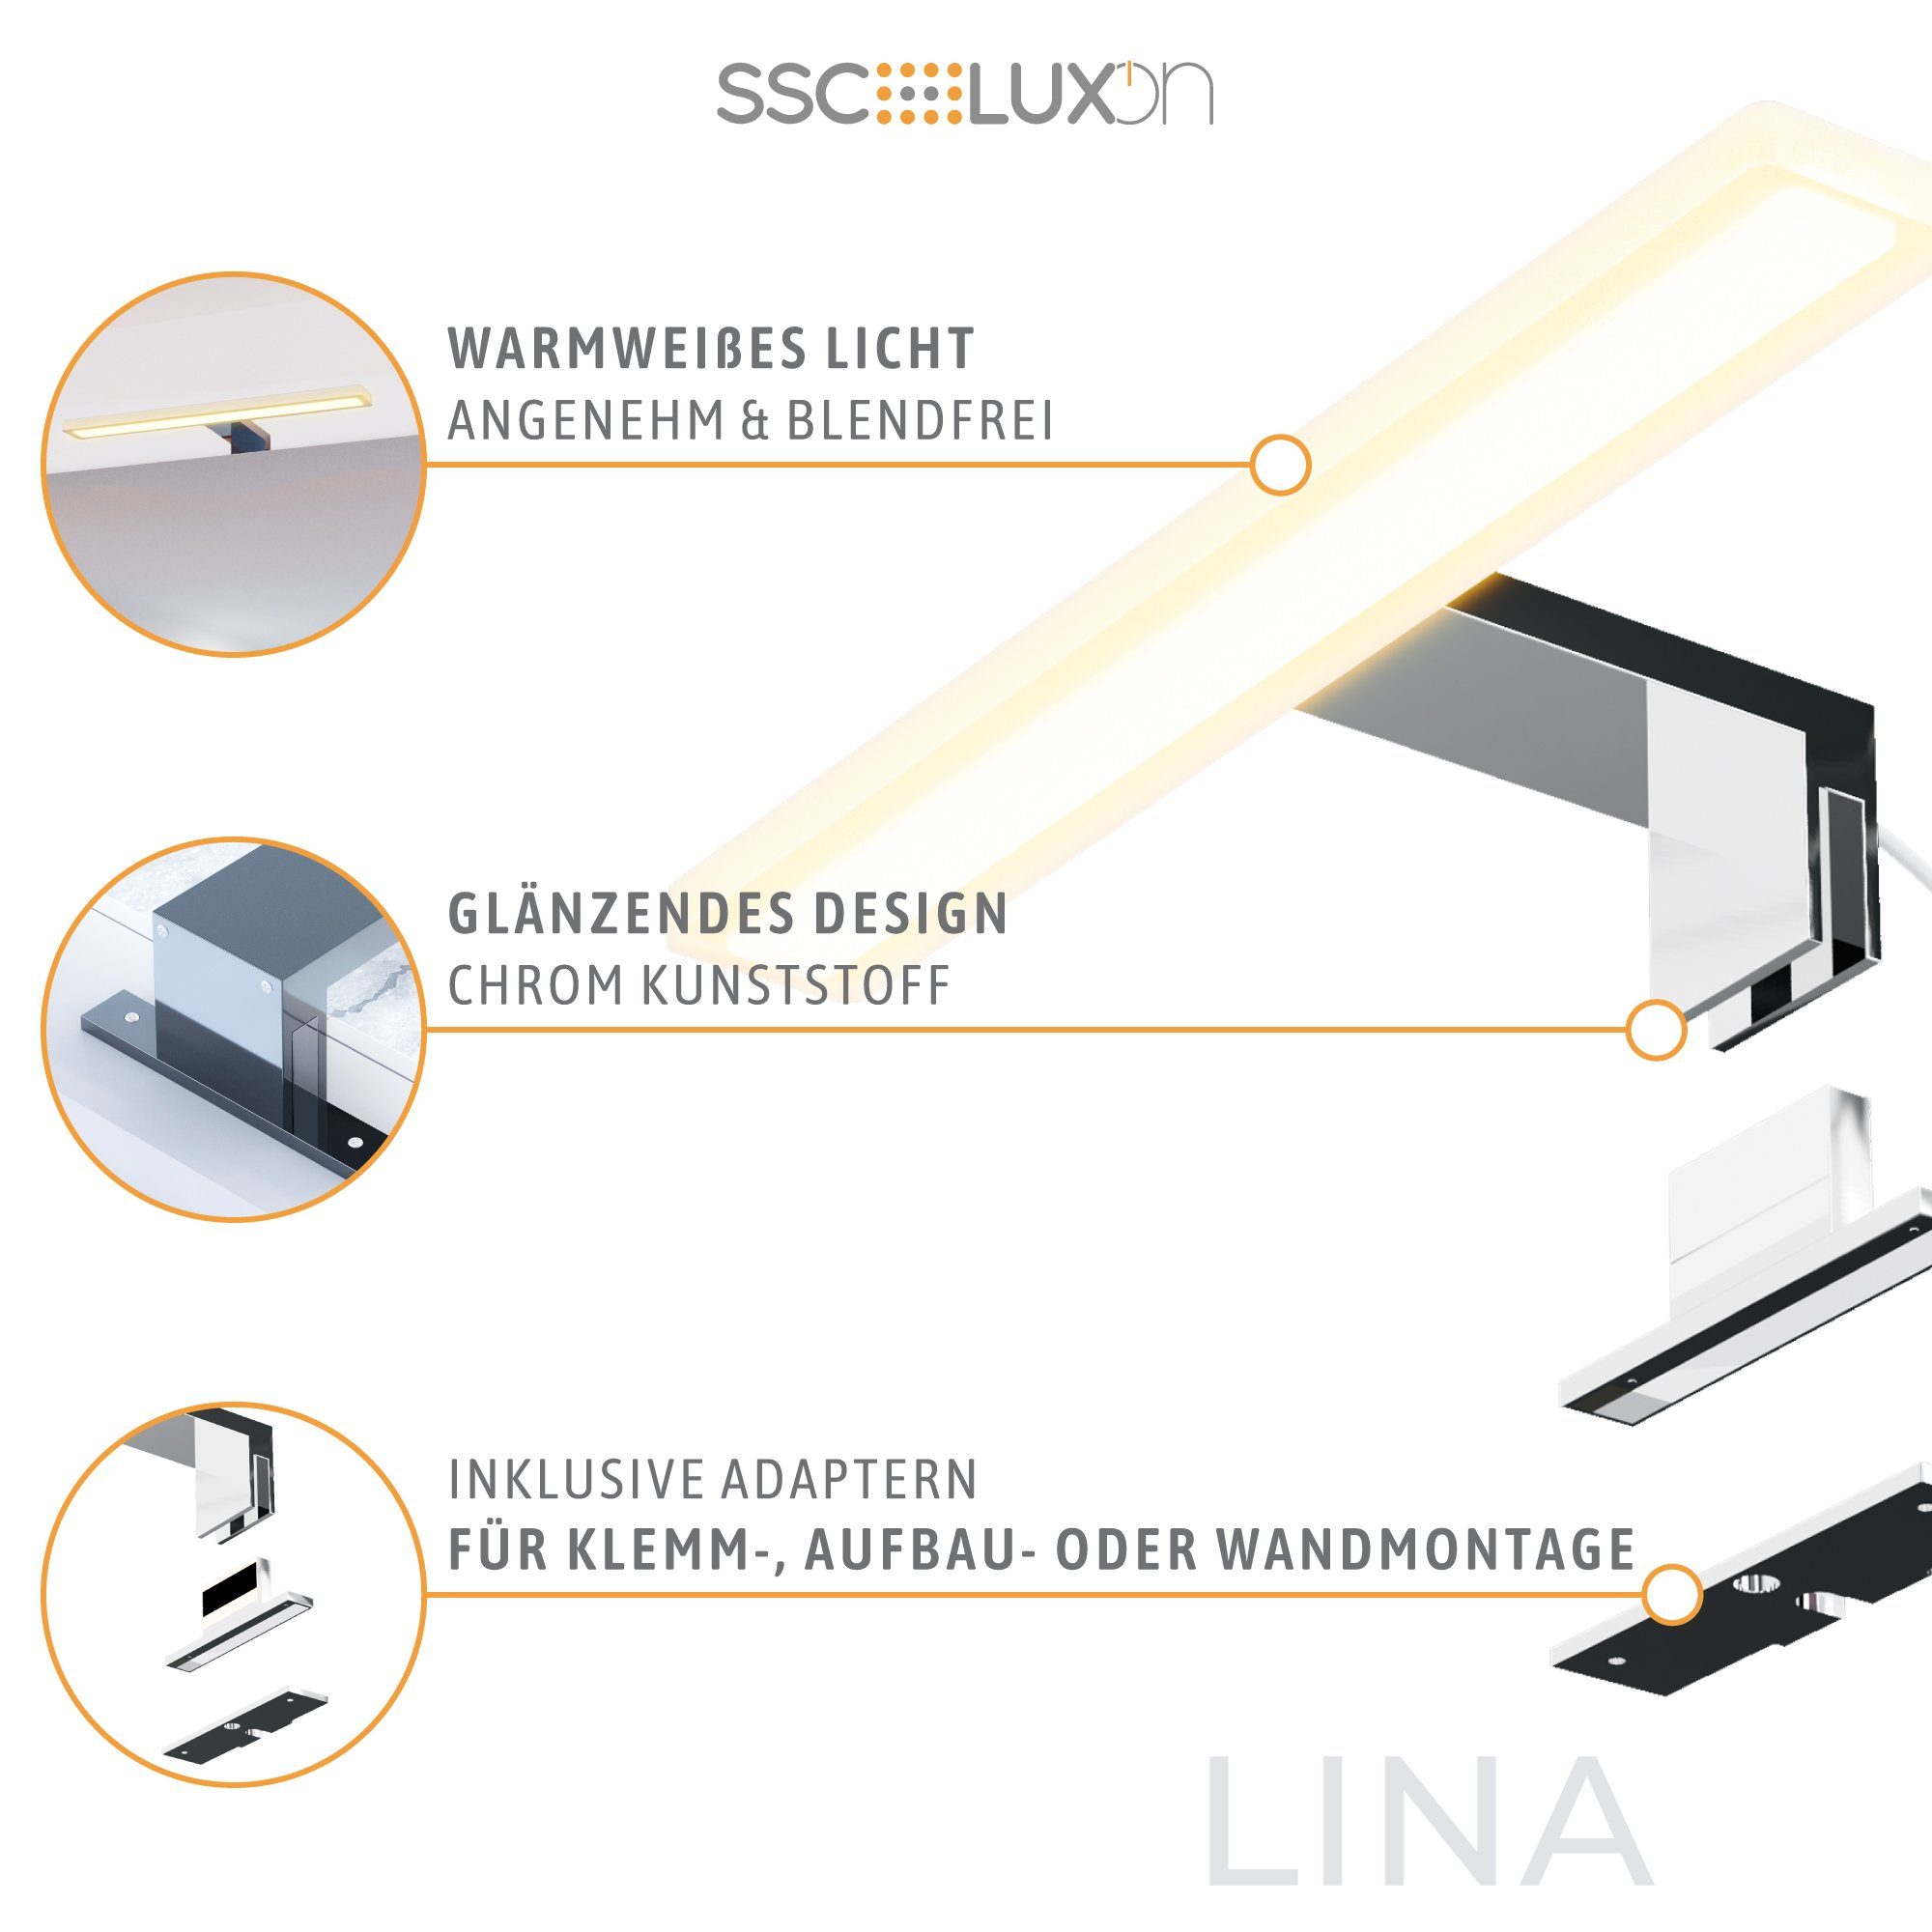 LED IP44 Warmweiß 8W Design Spiegelleuchte Bad LED LINA SSC-LUXon 30cm chrom, Bilderleuchte warmweiss 3-in-1